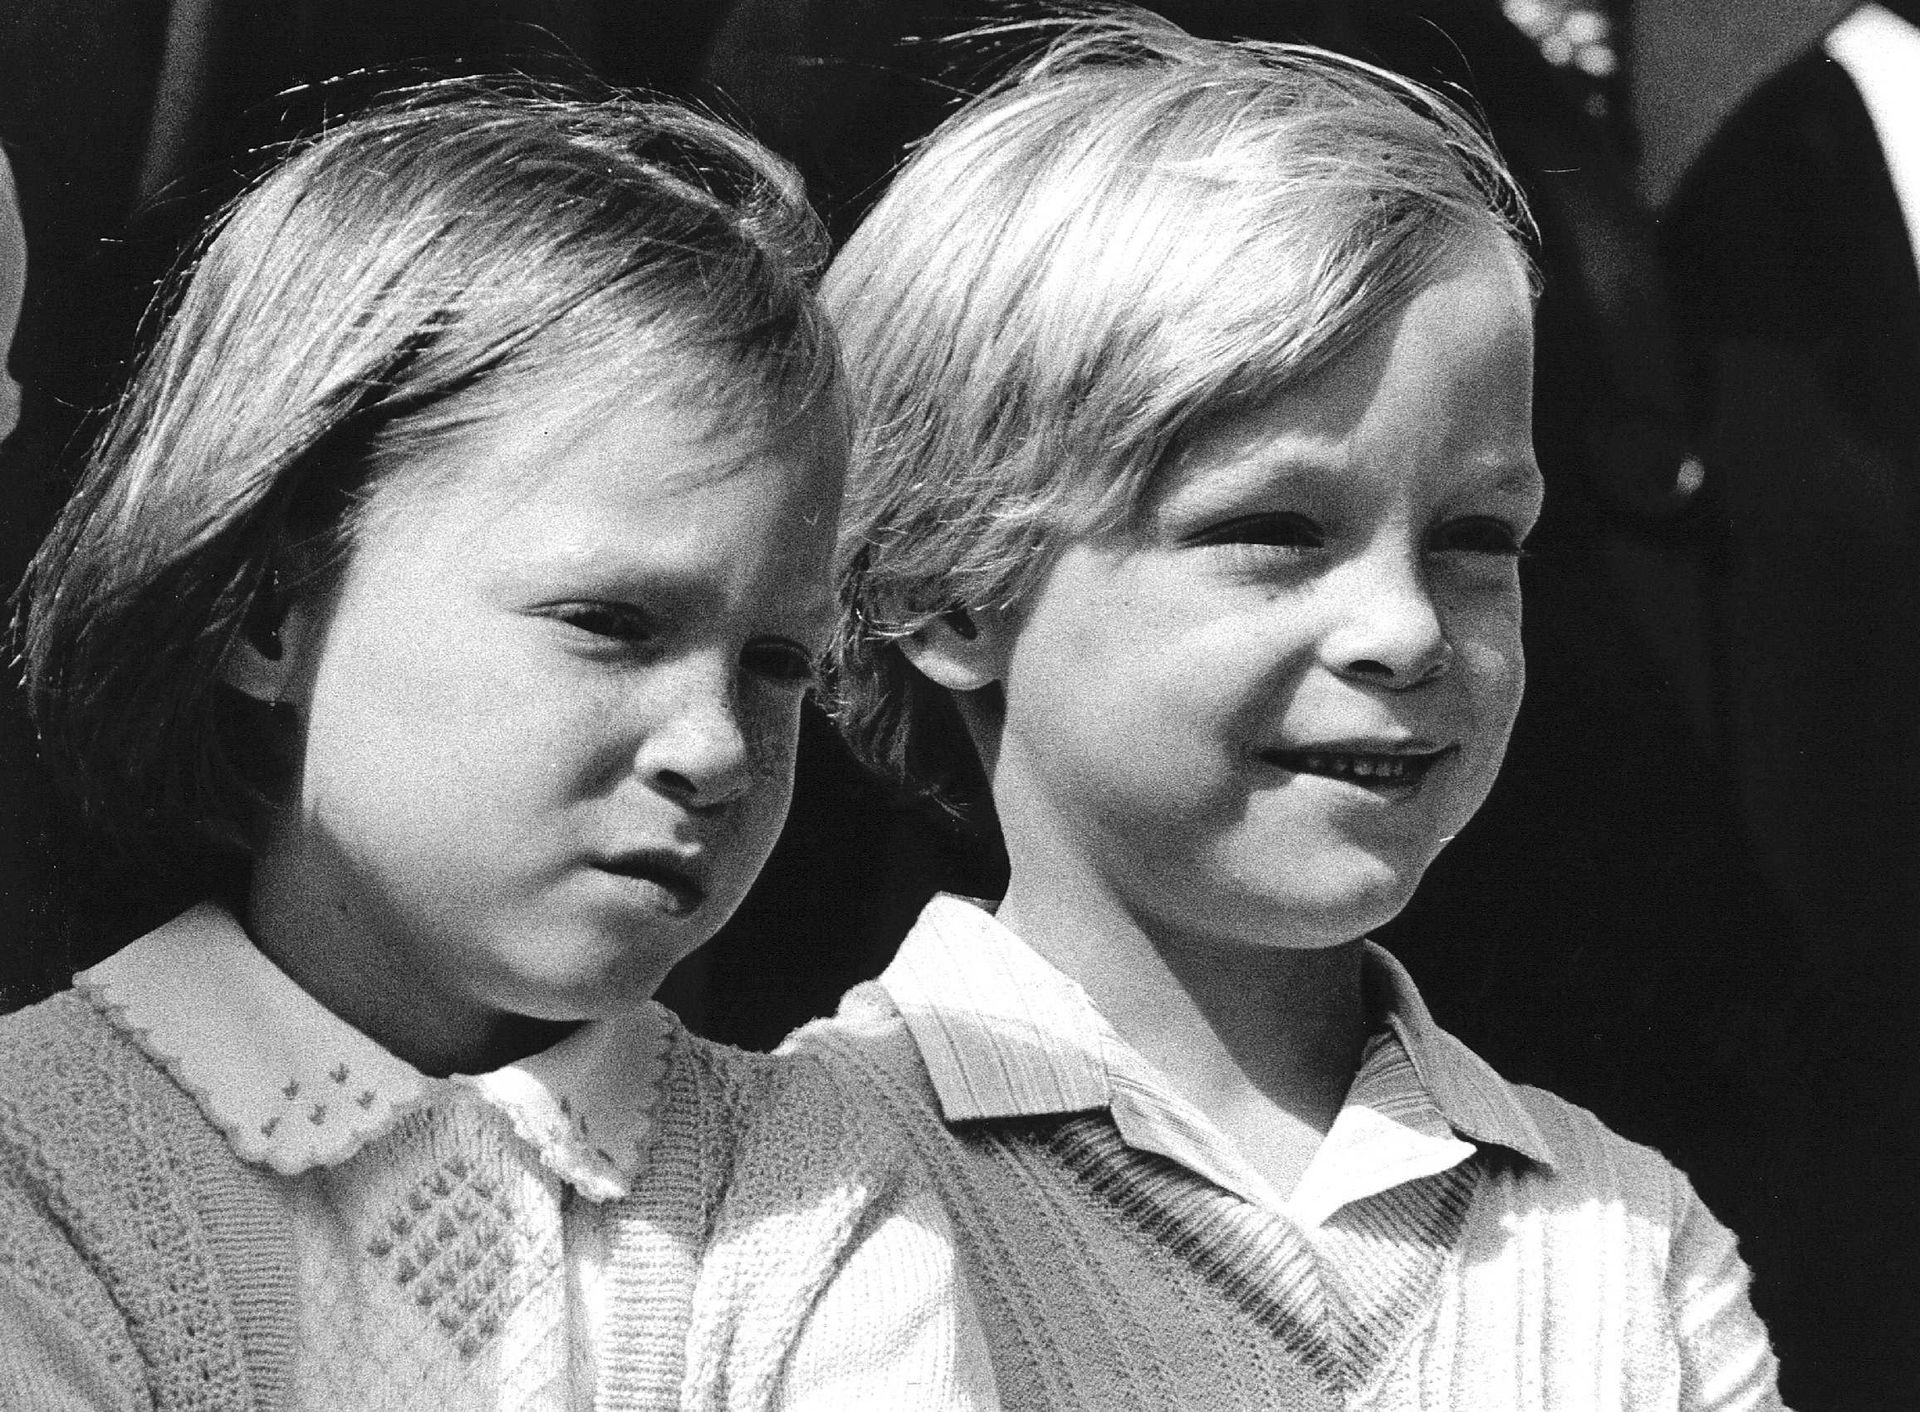 Een mooie zwart-witfoto van de tweeling, hier zes jaar oud.